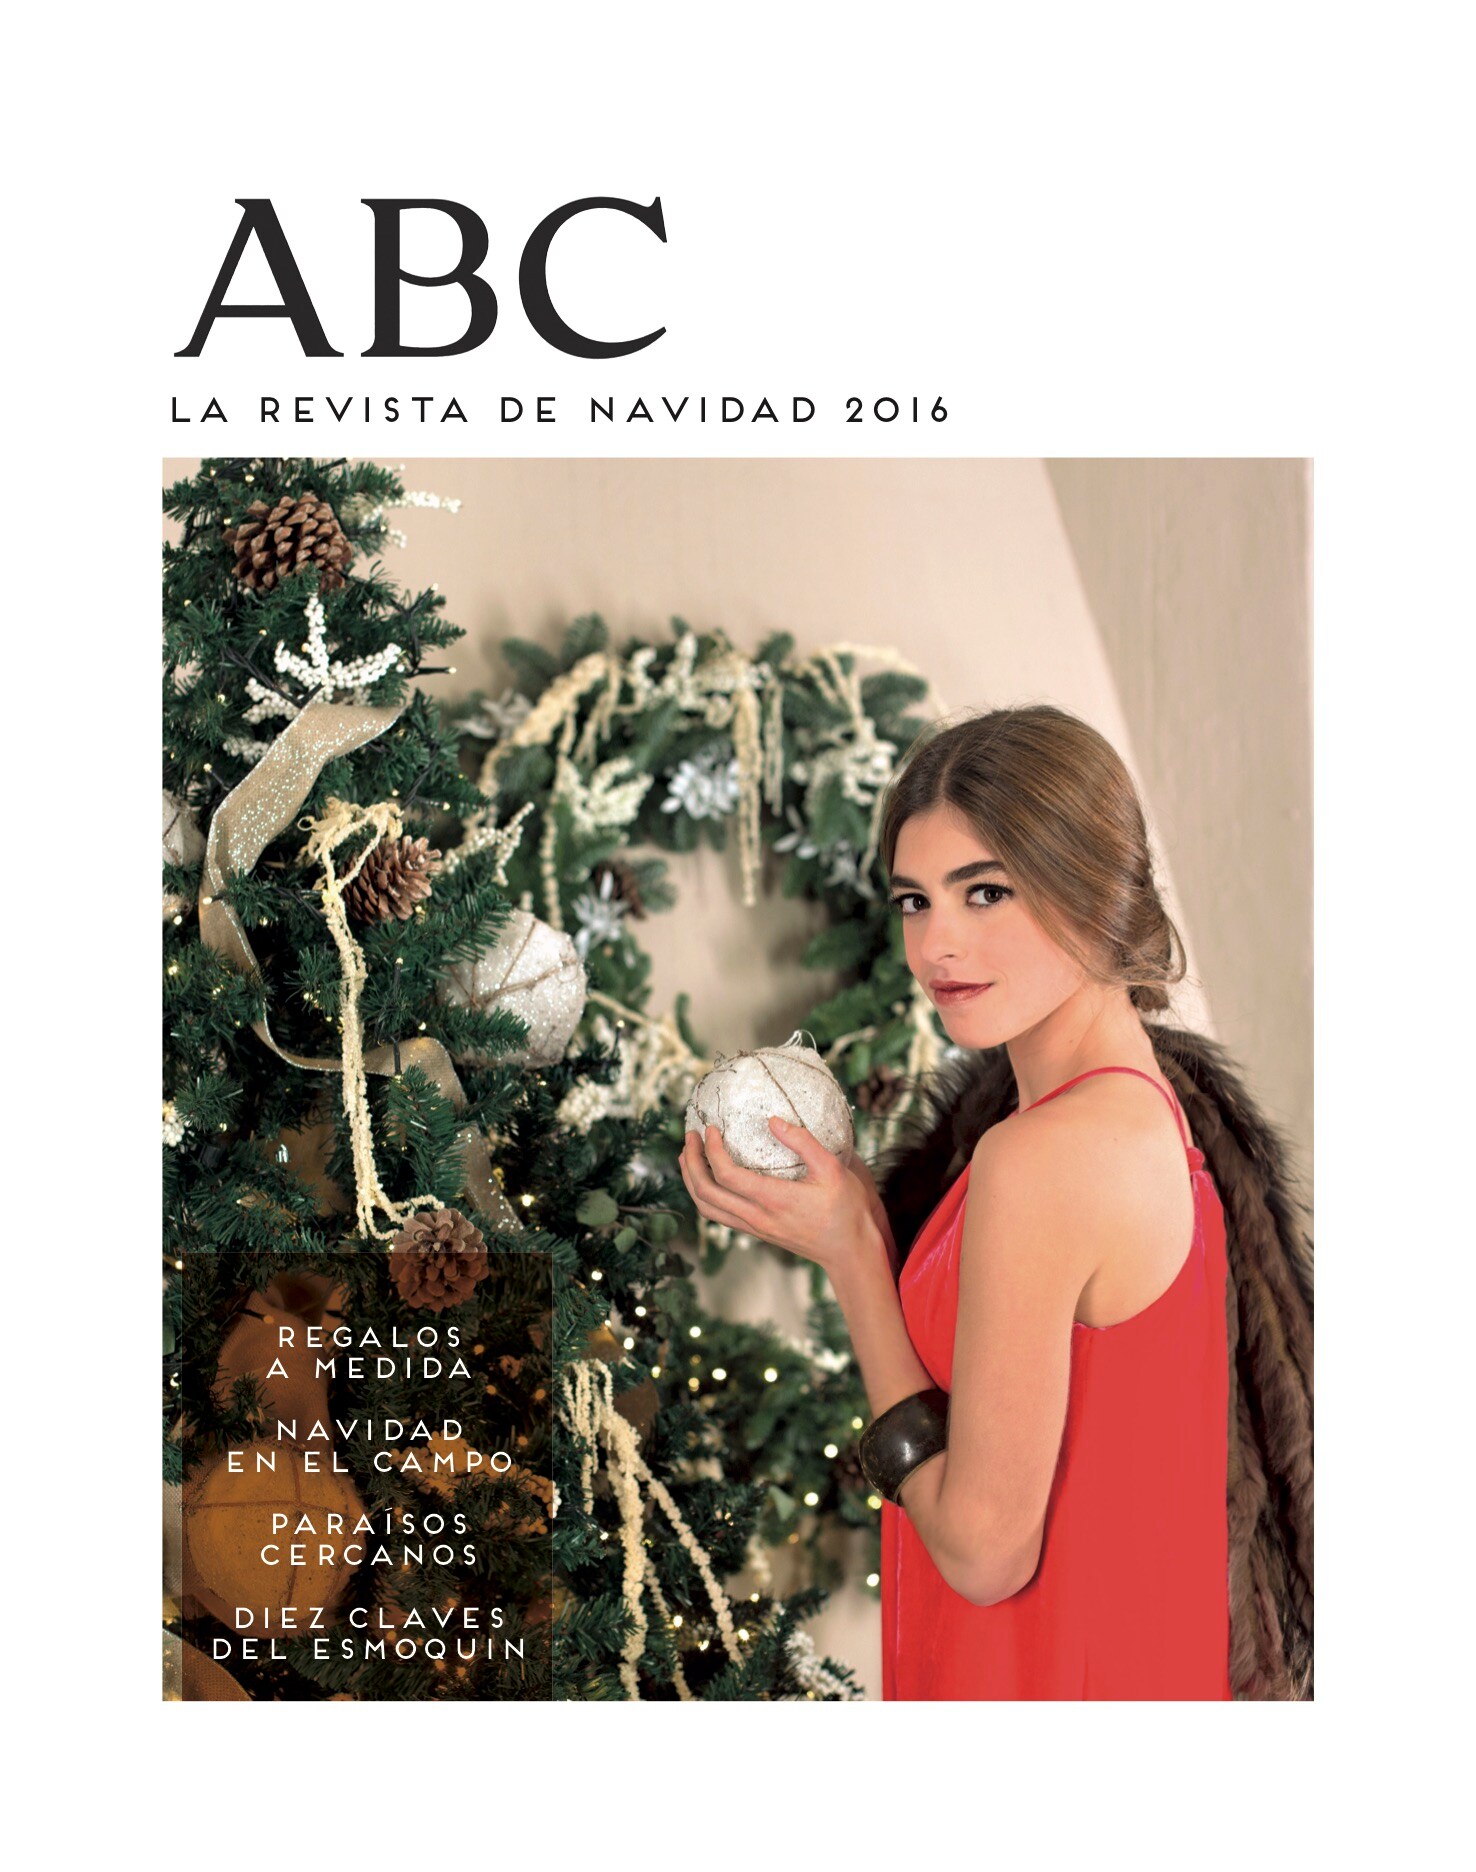 Hoy, la revista de ABC Navidad con el periódico